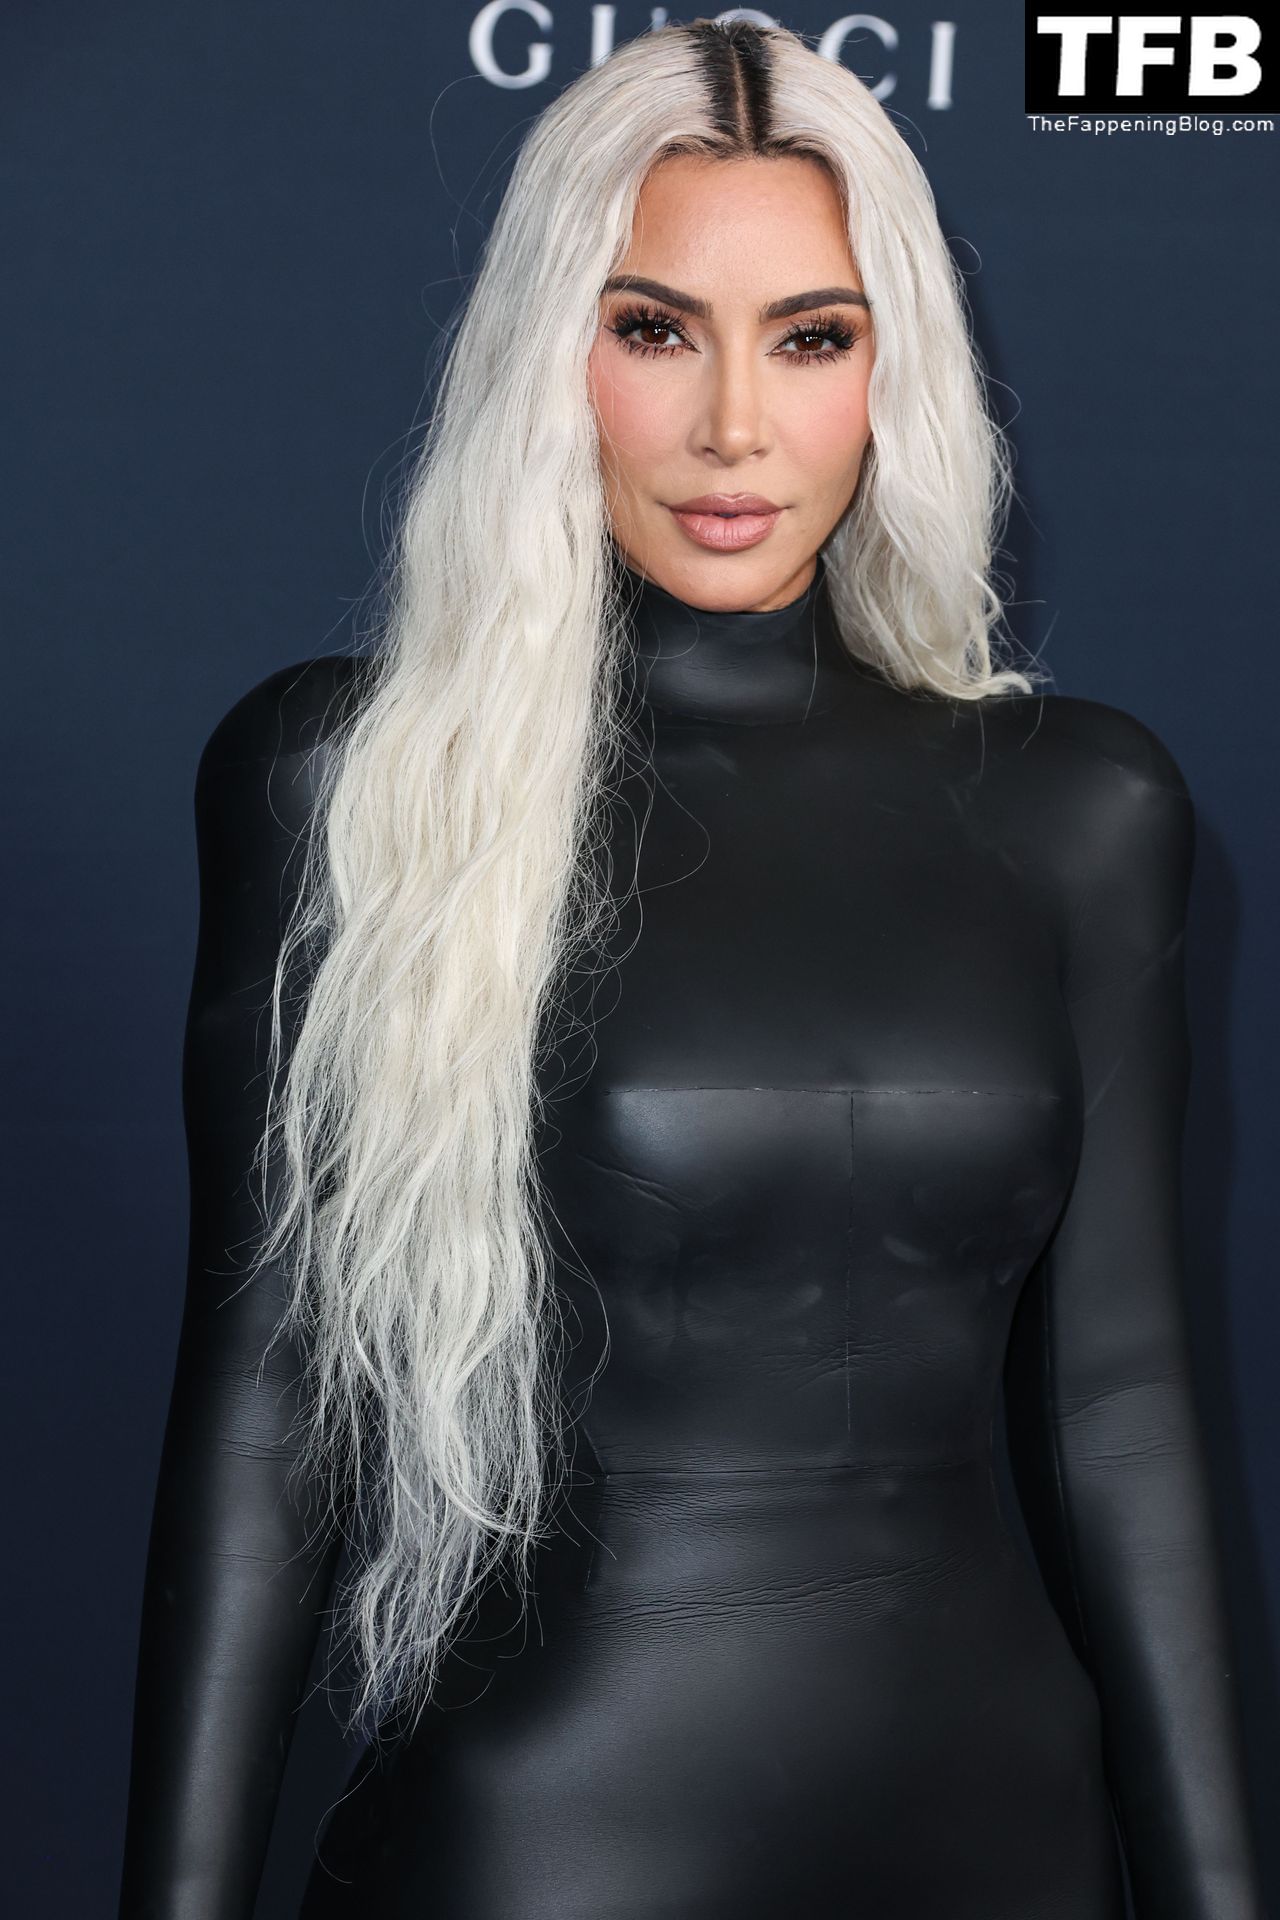 Kim-Kardashian-Sexy-The-Fappening-Blog-27.jpg